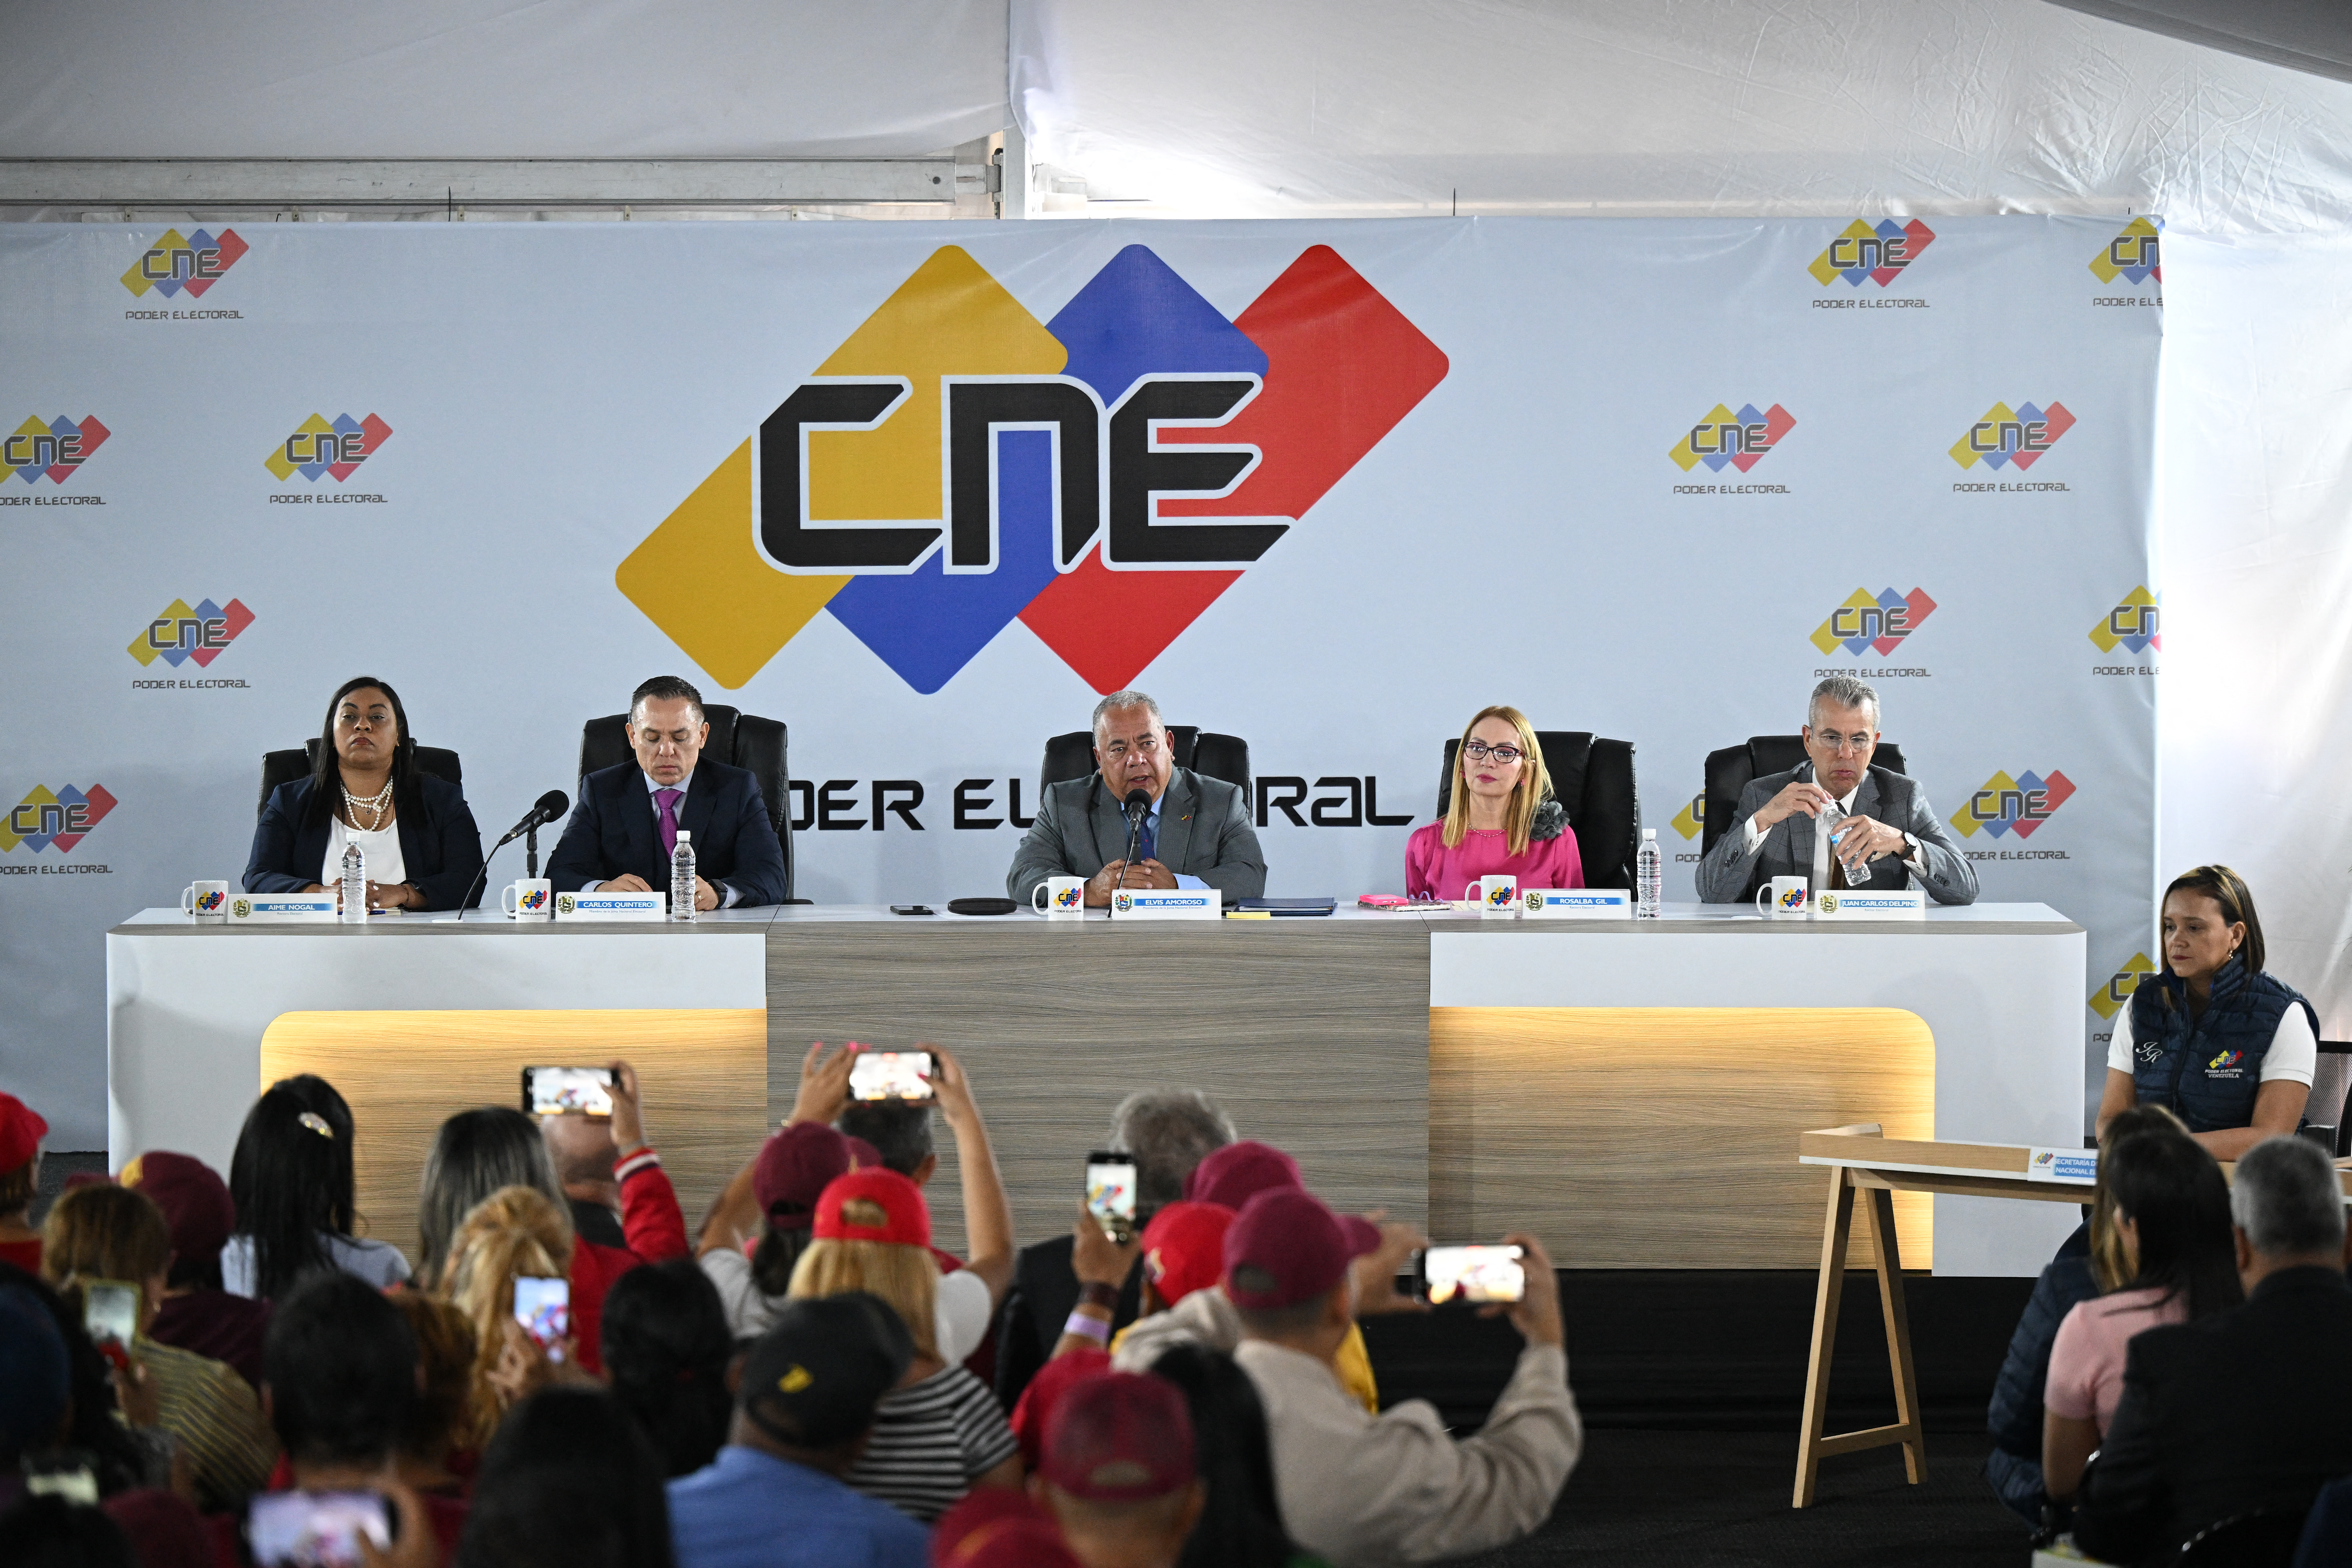 El País: Quién es quién en el CNE, la institución que organiza las elecciones en Venezuela